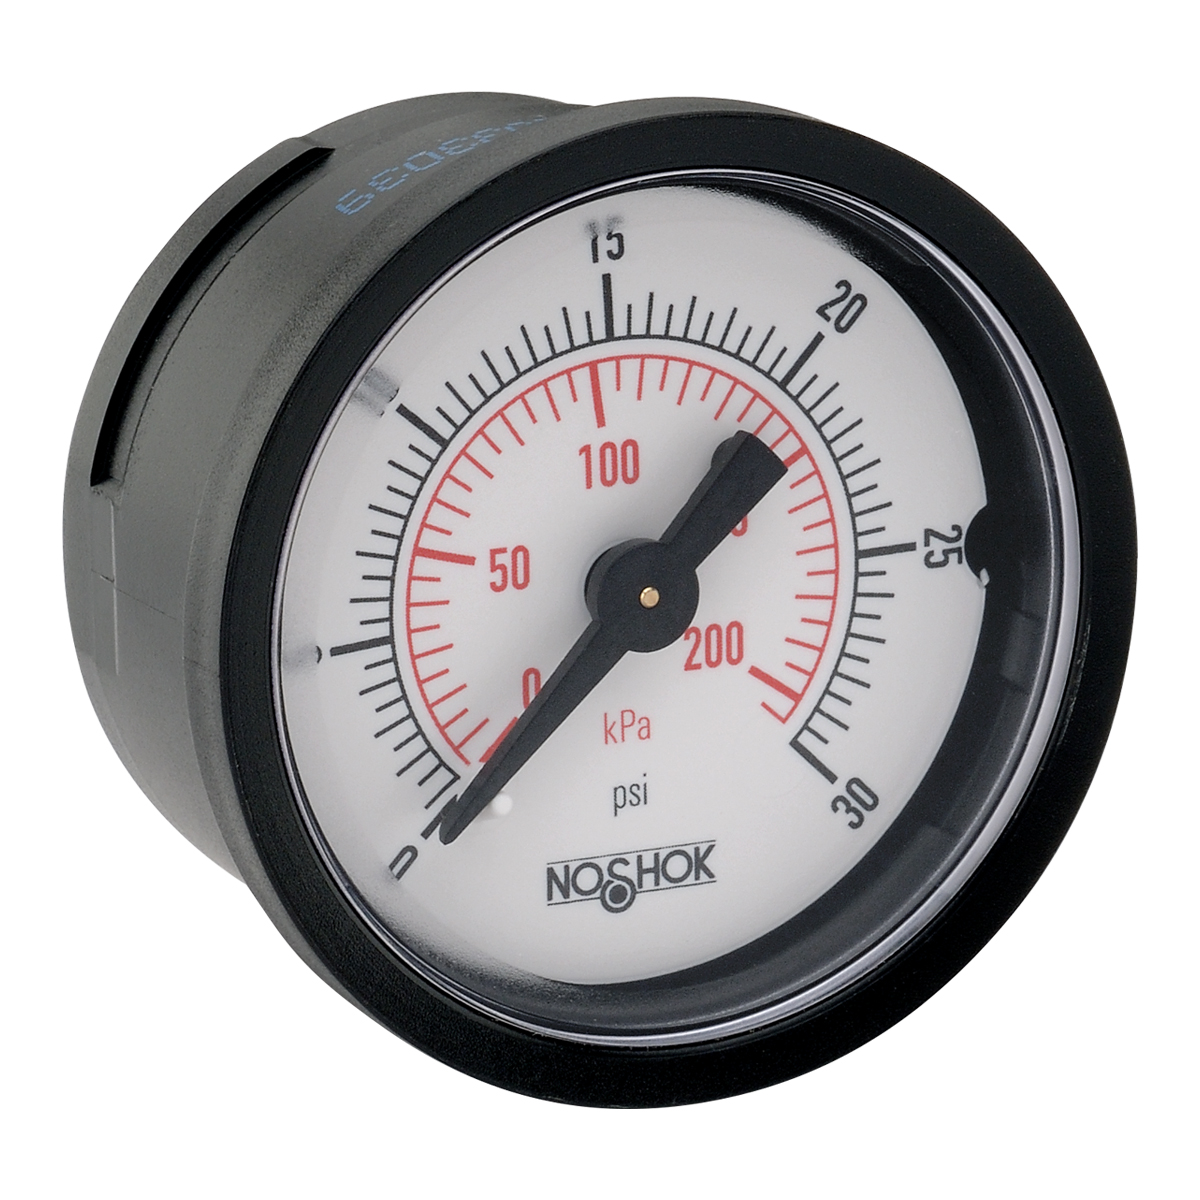 15-110-60-psi/kPa-BSC 100 Series ABS and Steel Case Dry Pressure Gauges